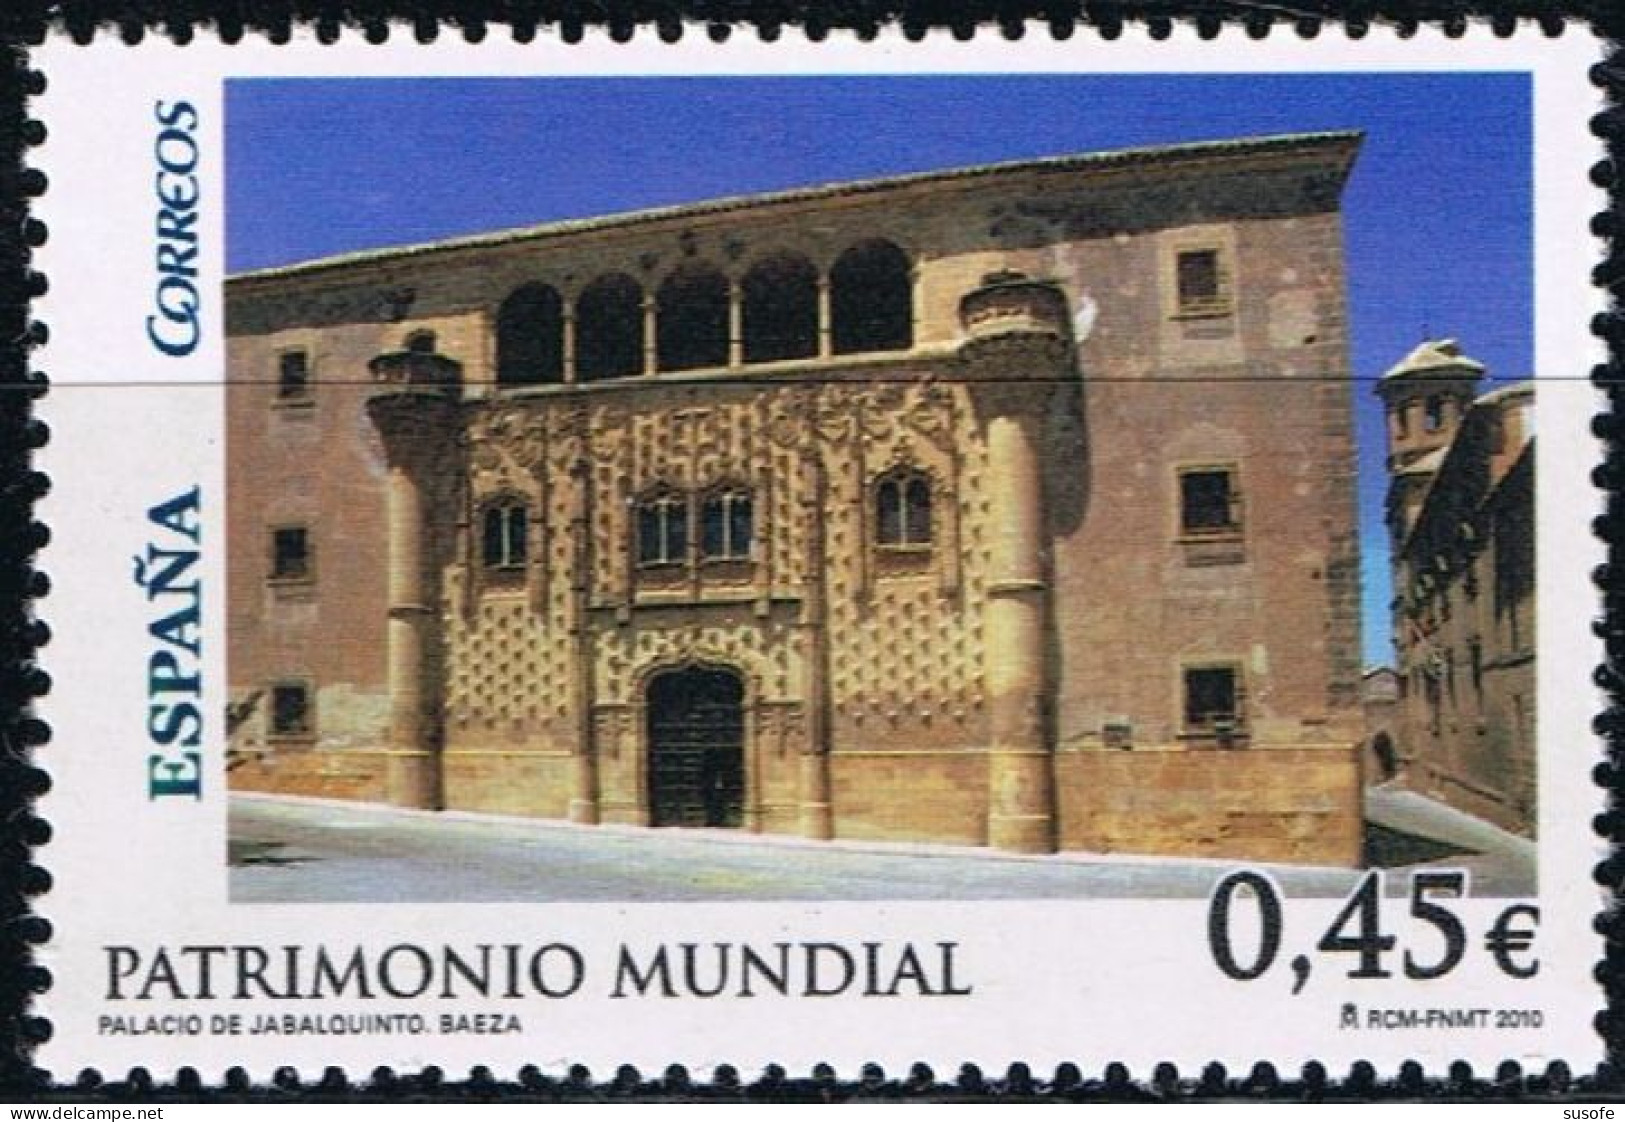 España 2010 Edifil 4557 Sello ** Patrimonio Mundial Palacio De Jabalquinto Baeza (Jaen) Michel 4499 Yvert 4203 Spain - Unused Stamps